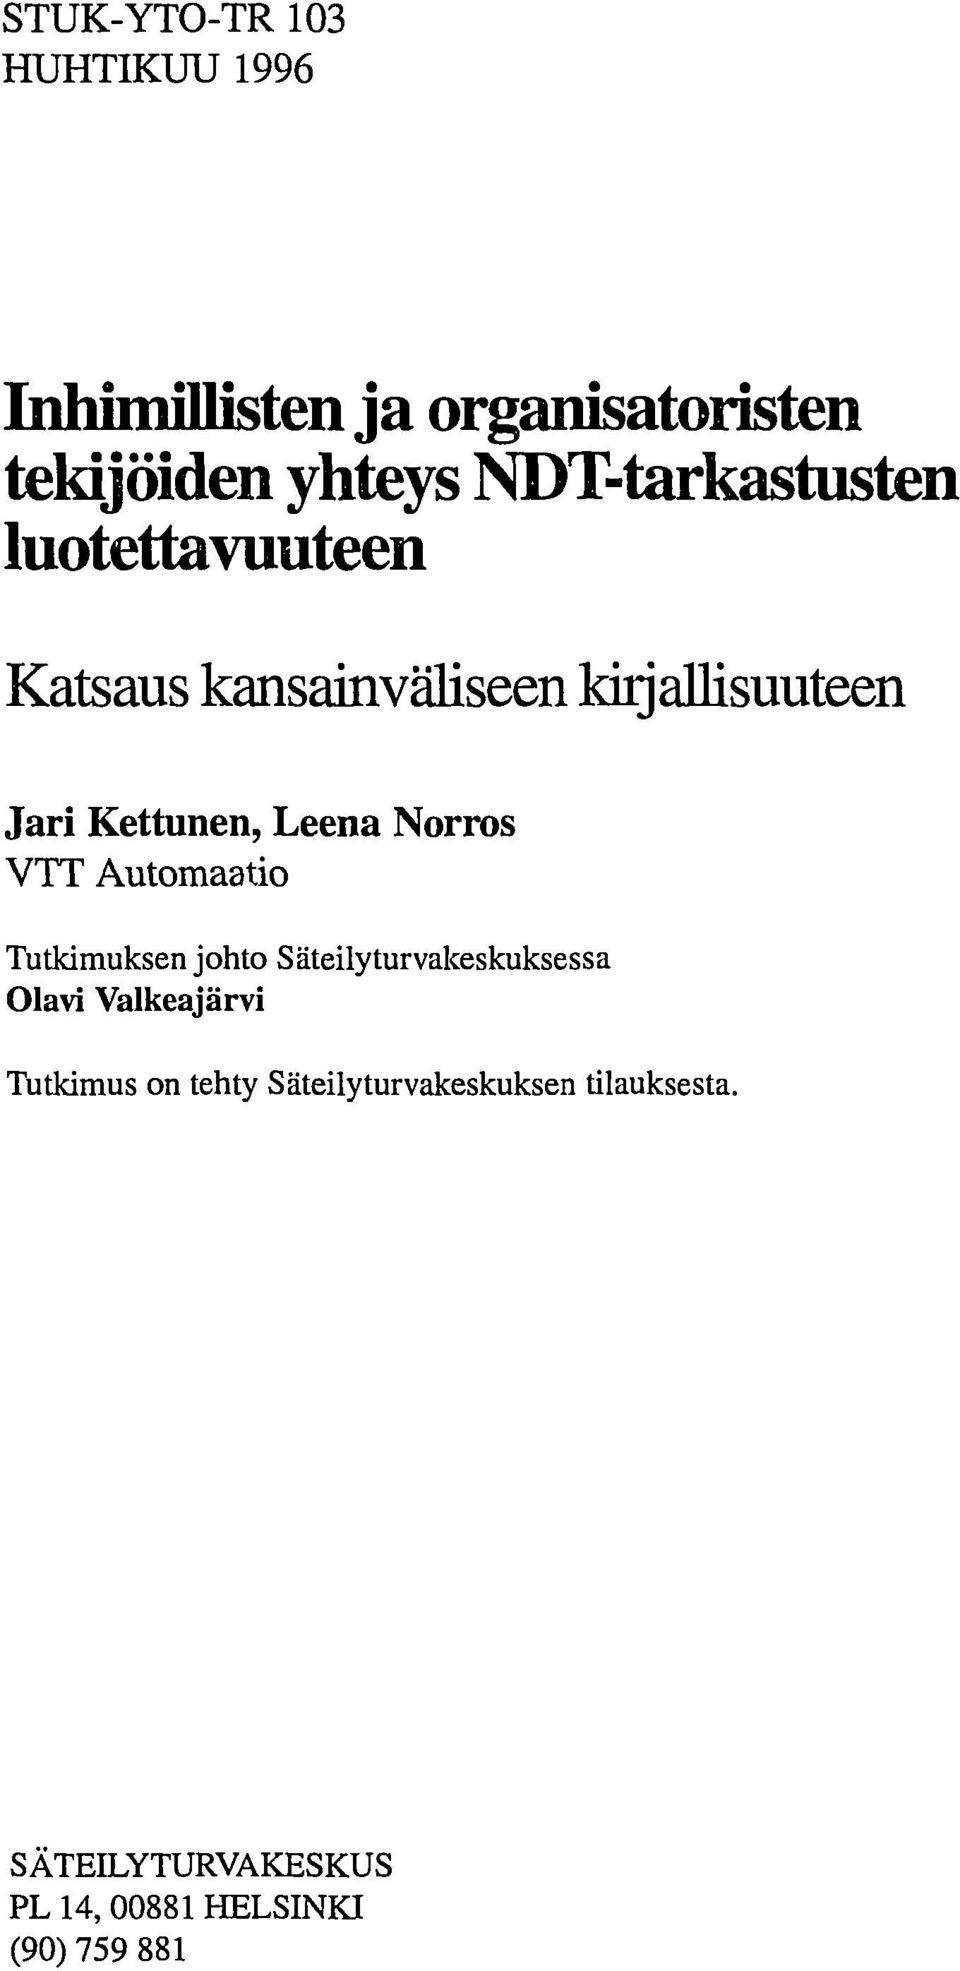 Kettunen, Leena Norros VTT Automaatio Tutkimuksen johto Säteilyturvakeskuksessa Olavi